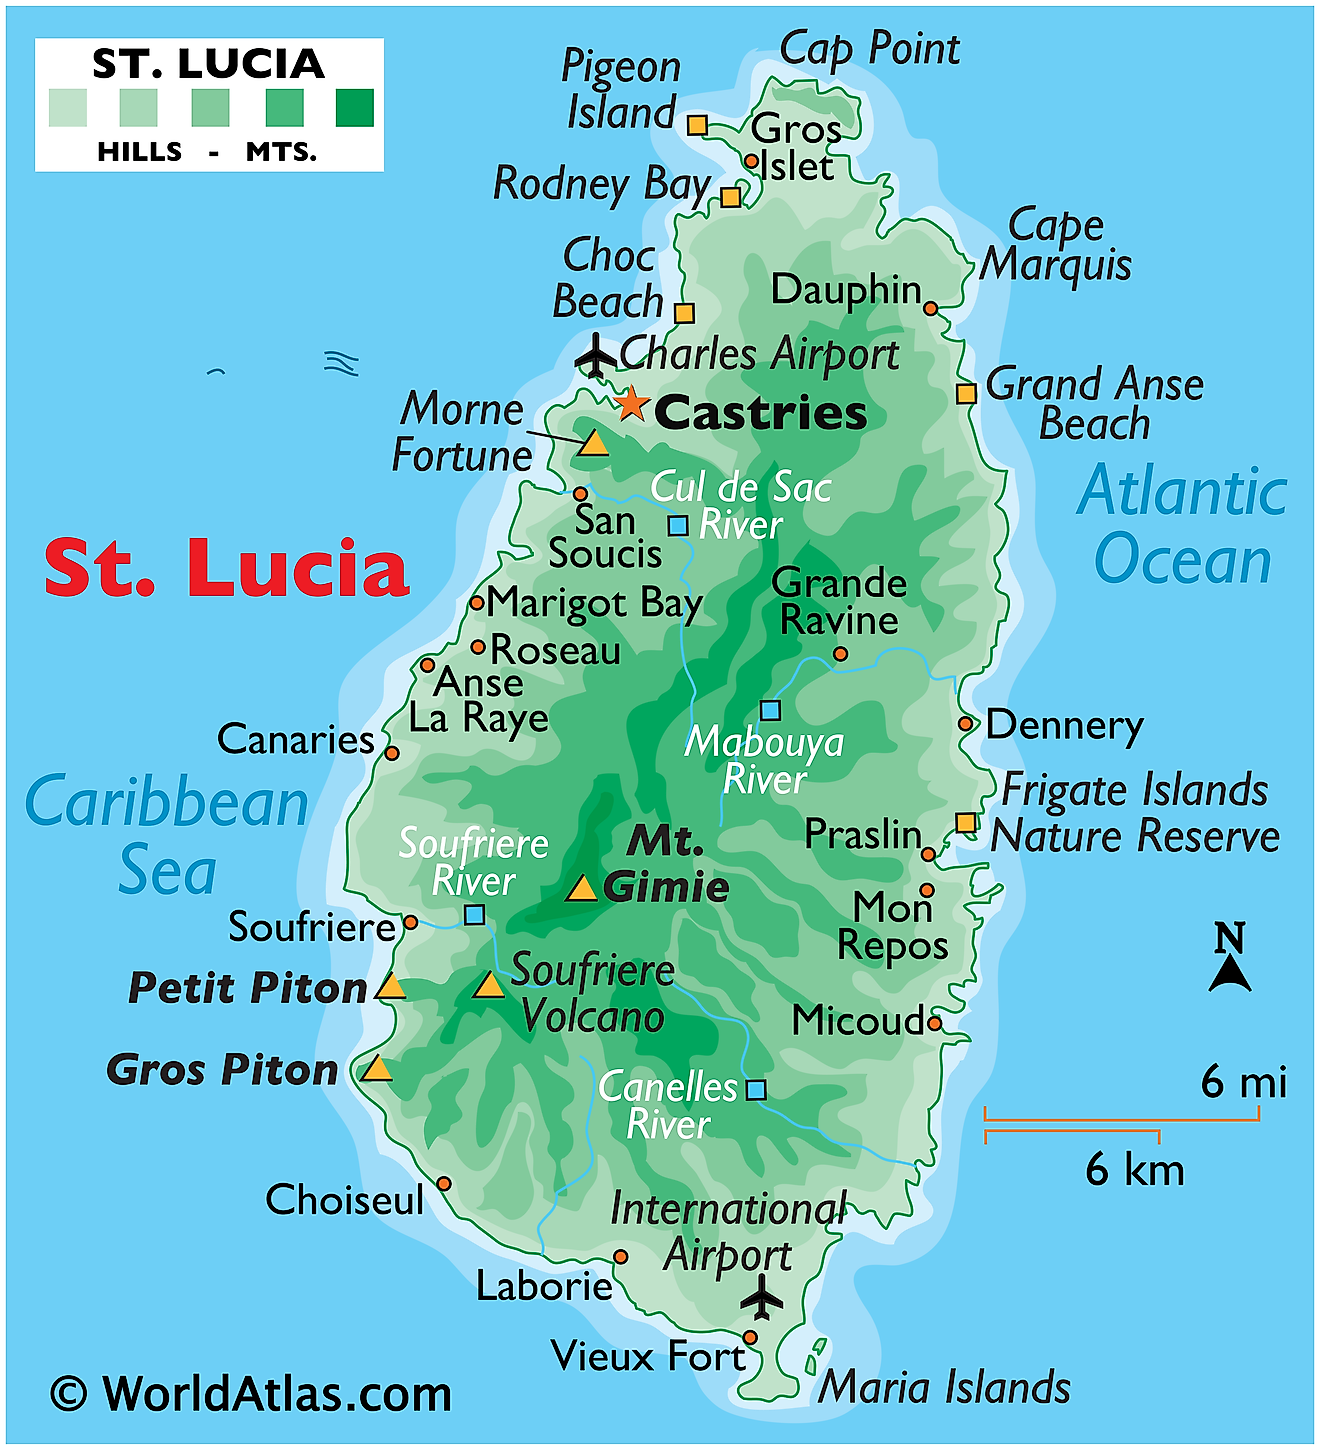 Mapa físico de Santa Lucía que muestra relieve, islas, montañas, islas más pequeñas, volcanes, ríos y más.